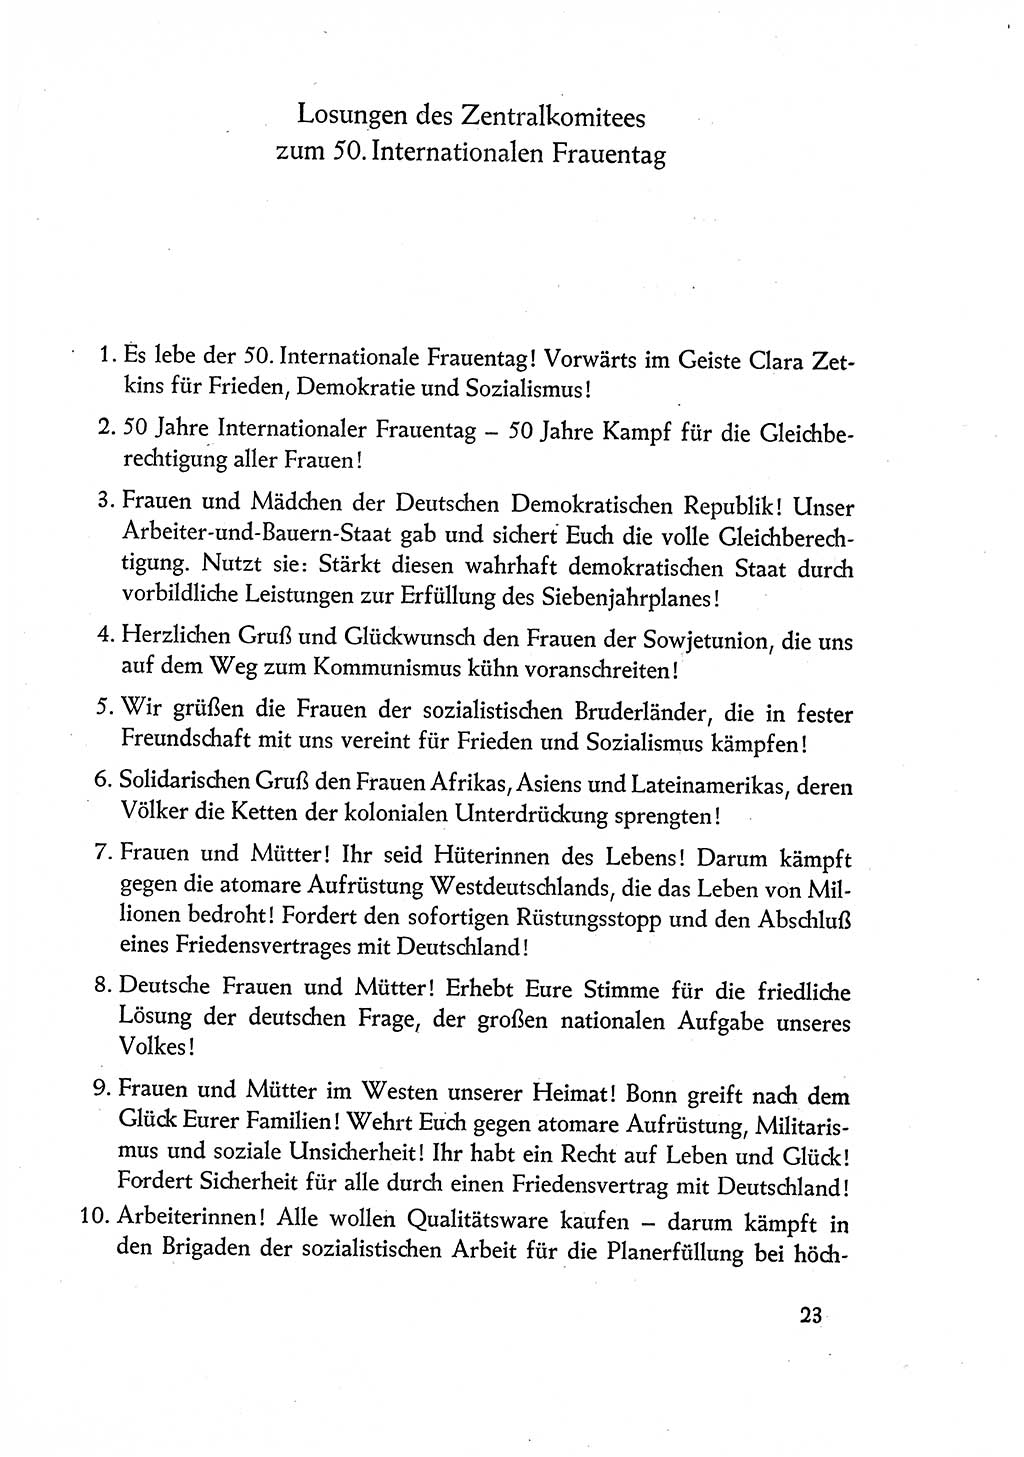 Dokumente der Sozialistischen Einheitspartei Deutschlands (SED) [Deutsche Demokratische Republik (DDR)] 1960-1961, Seite 23 (Dok. SED DDR 1960-1961, S. 23)